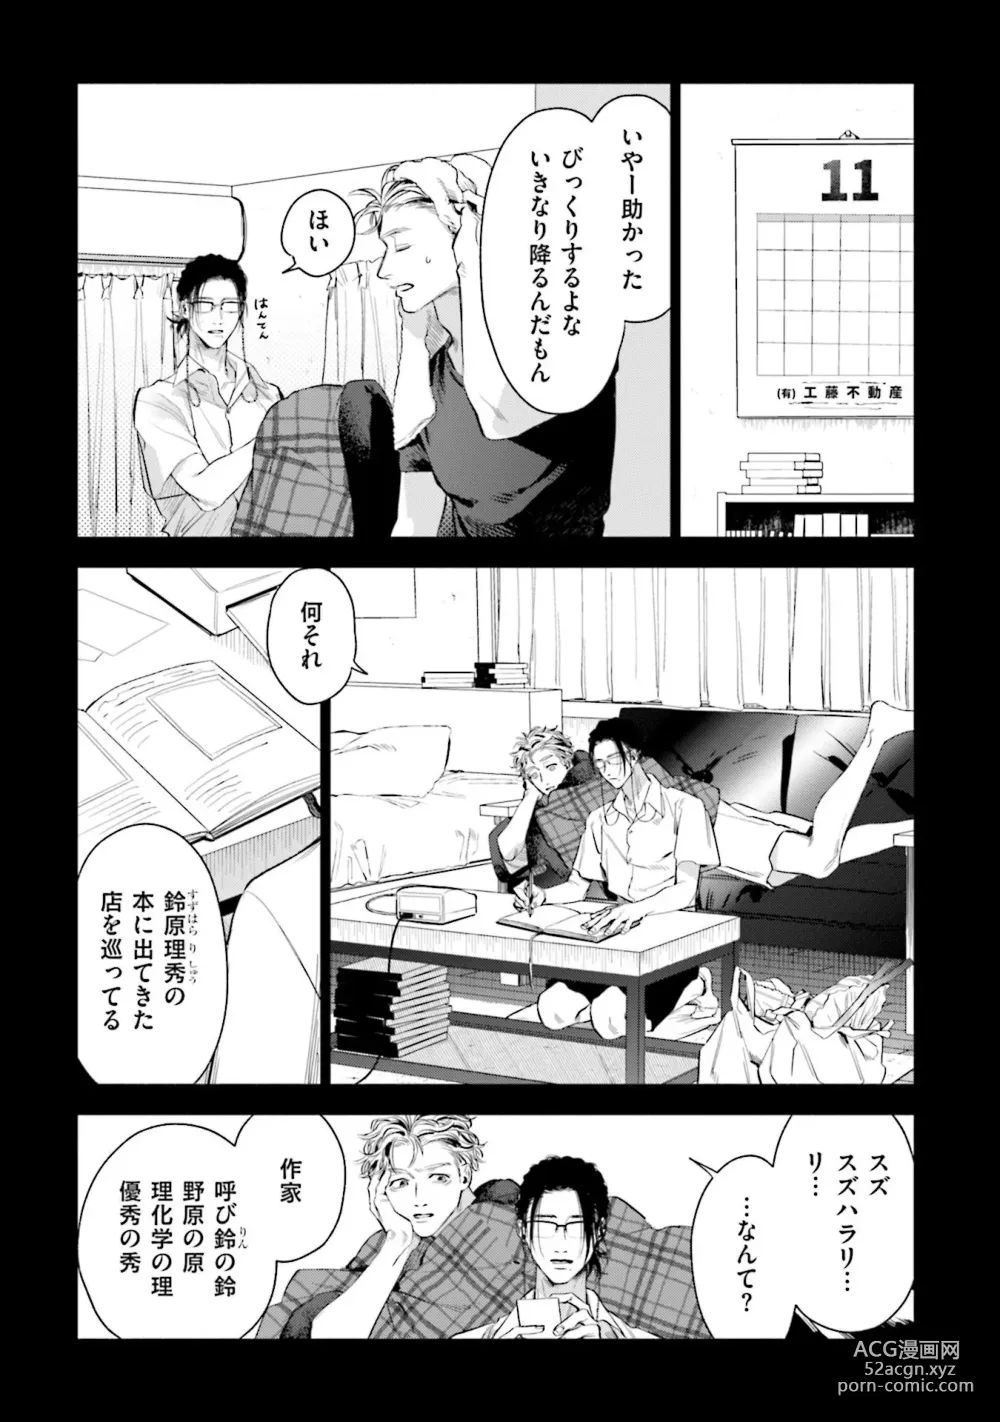 Page 11 of manga Hitoriyogari no Vanilla